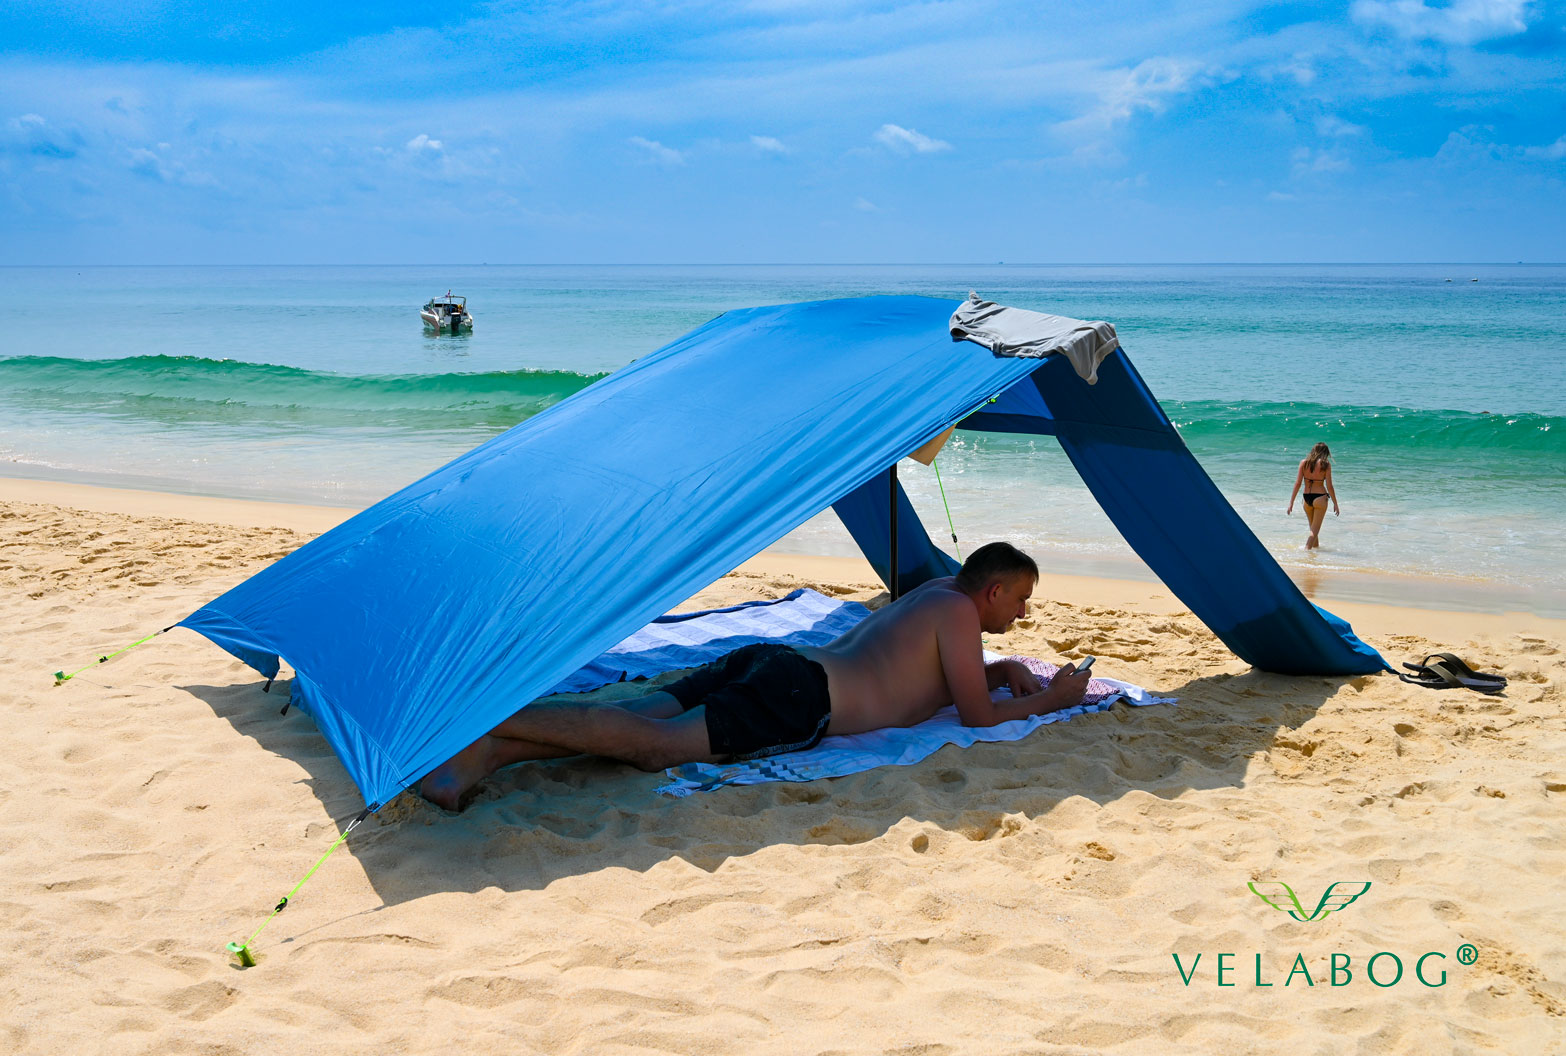 Toldo playa Velabog Breeze azul. Refugio solar con ventilación incluso en los días sin viento. Mucha más sombra en comparación con sombrillas de playa. Mucho más aire en comparación con carpas de playa. Opción de montaje - días sin viento, con poco viento o racheado. Vista lateral. Personas.